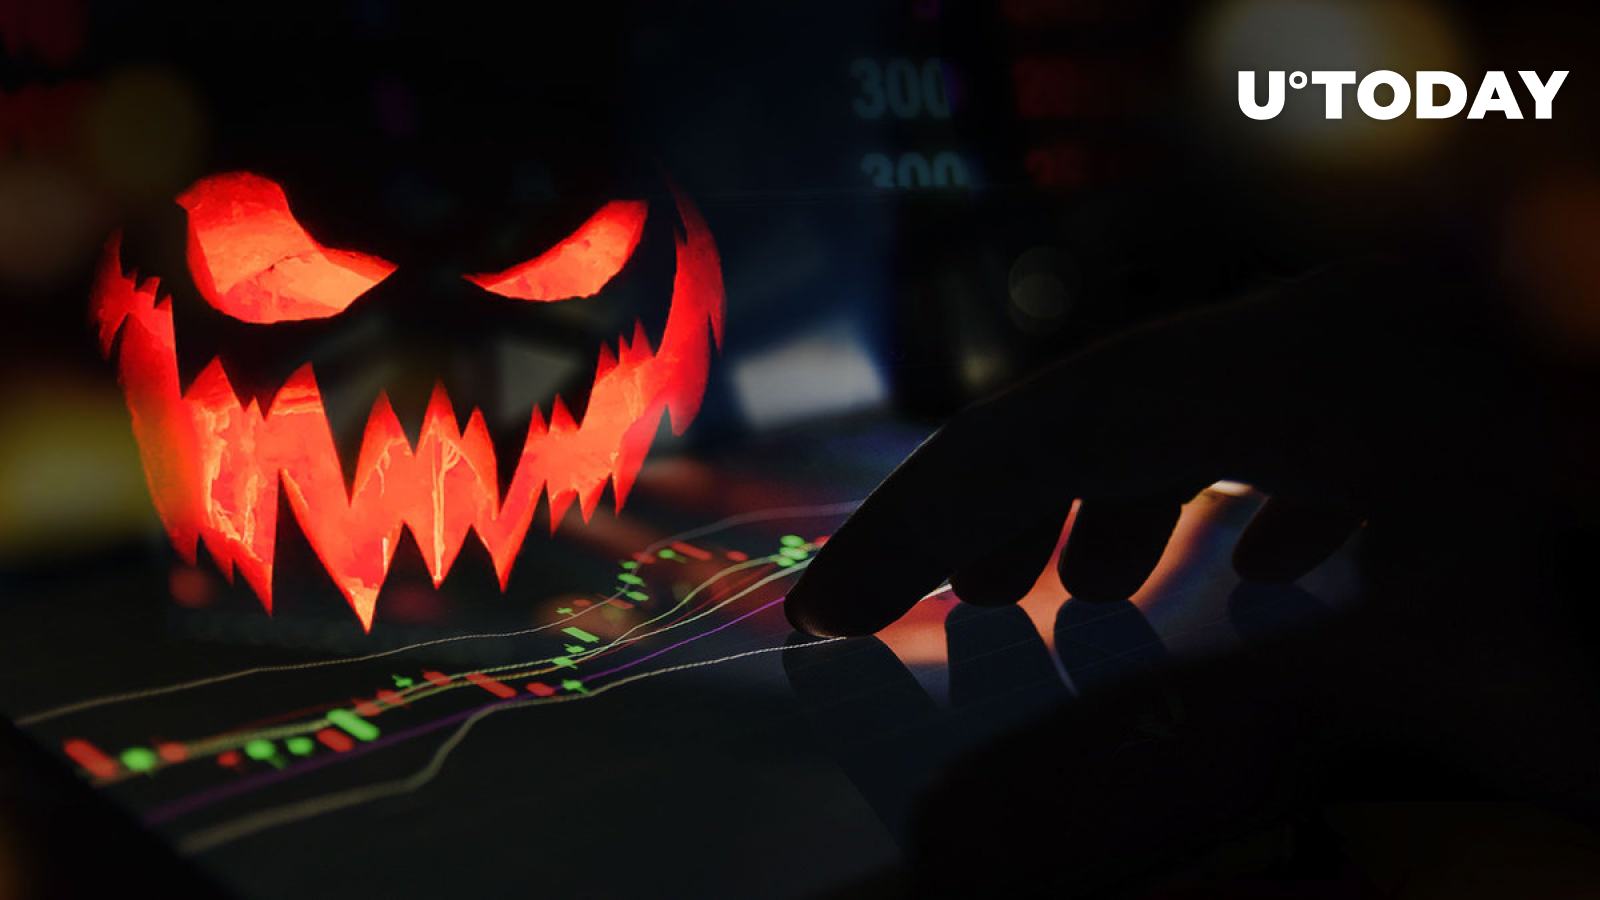 ترس بر بازار کریپتو حاکم است زیرا سرمایه گذاران منتظر فروش هالووین هستند، در اینجا دلیل آن است